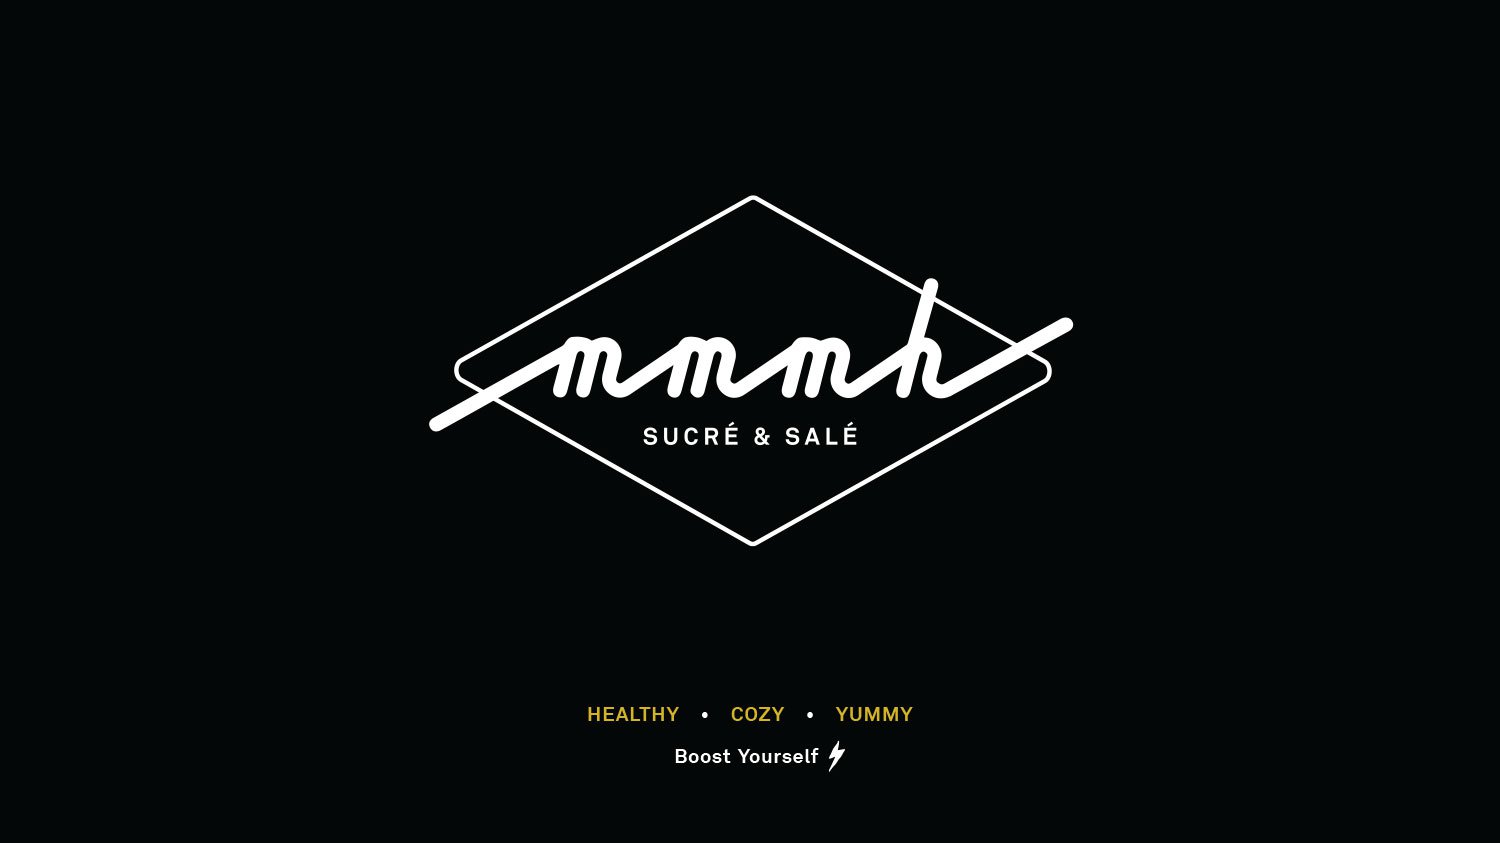 mmmh logo cover